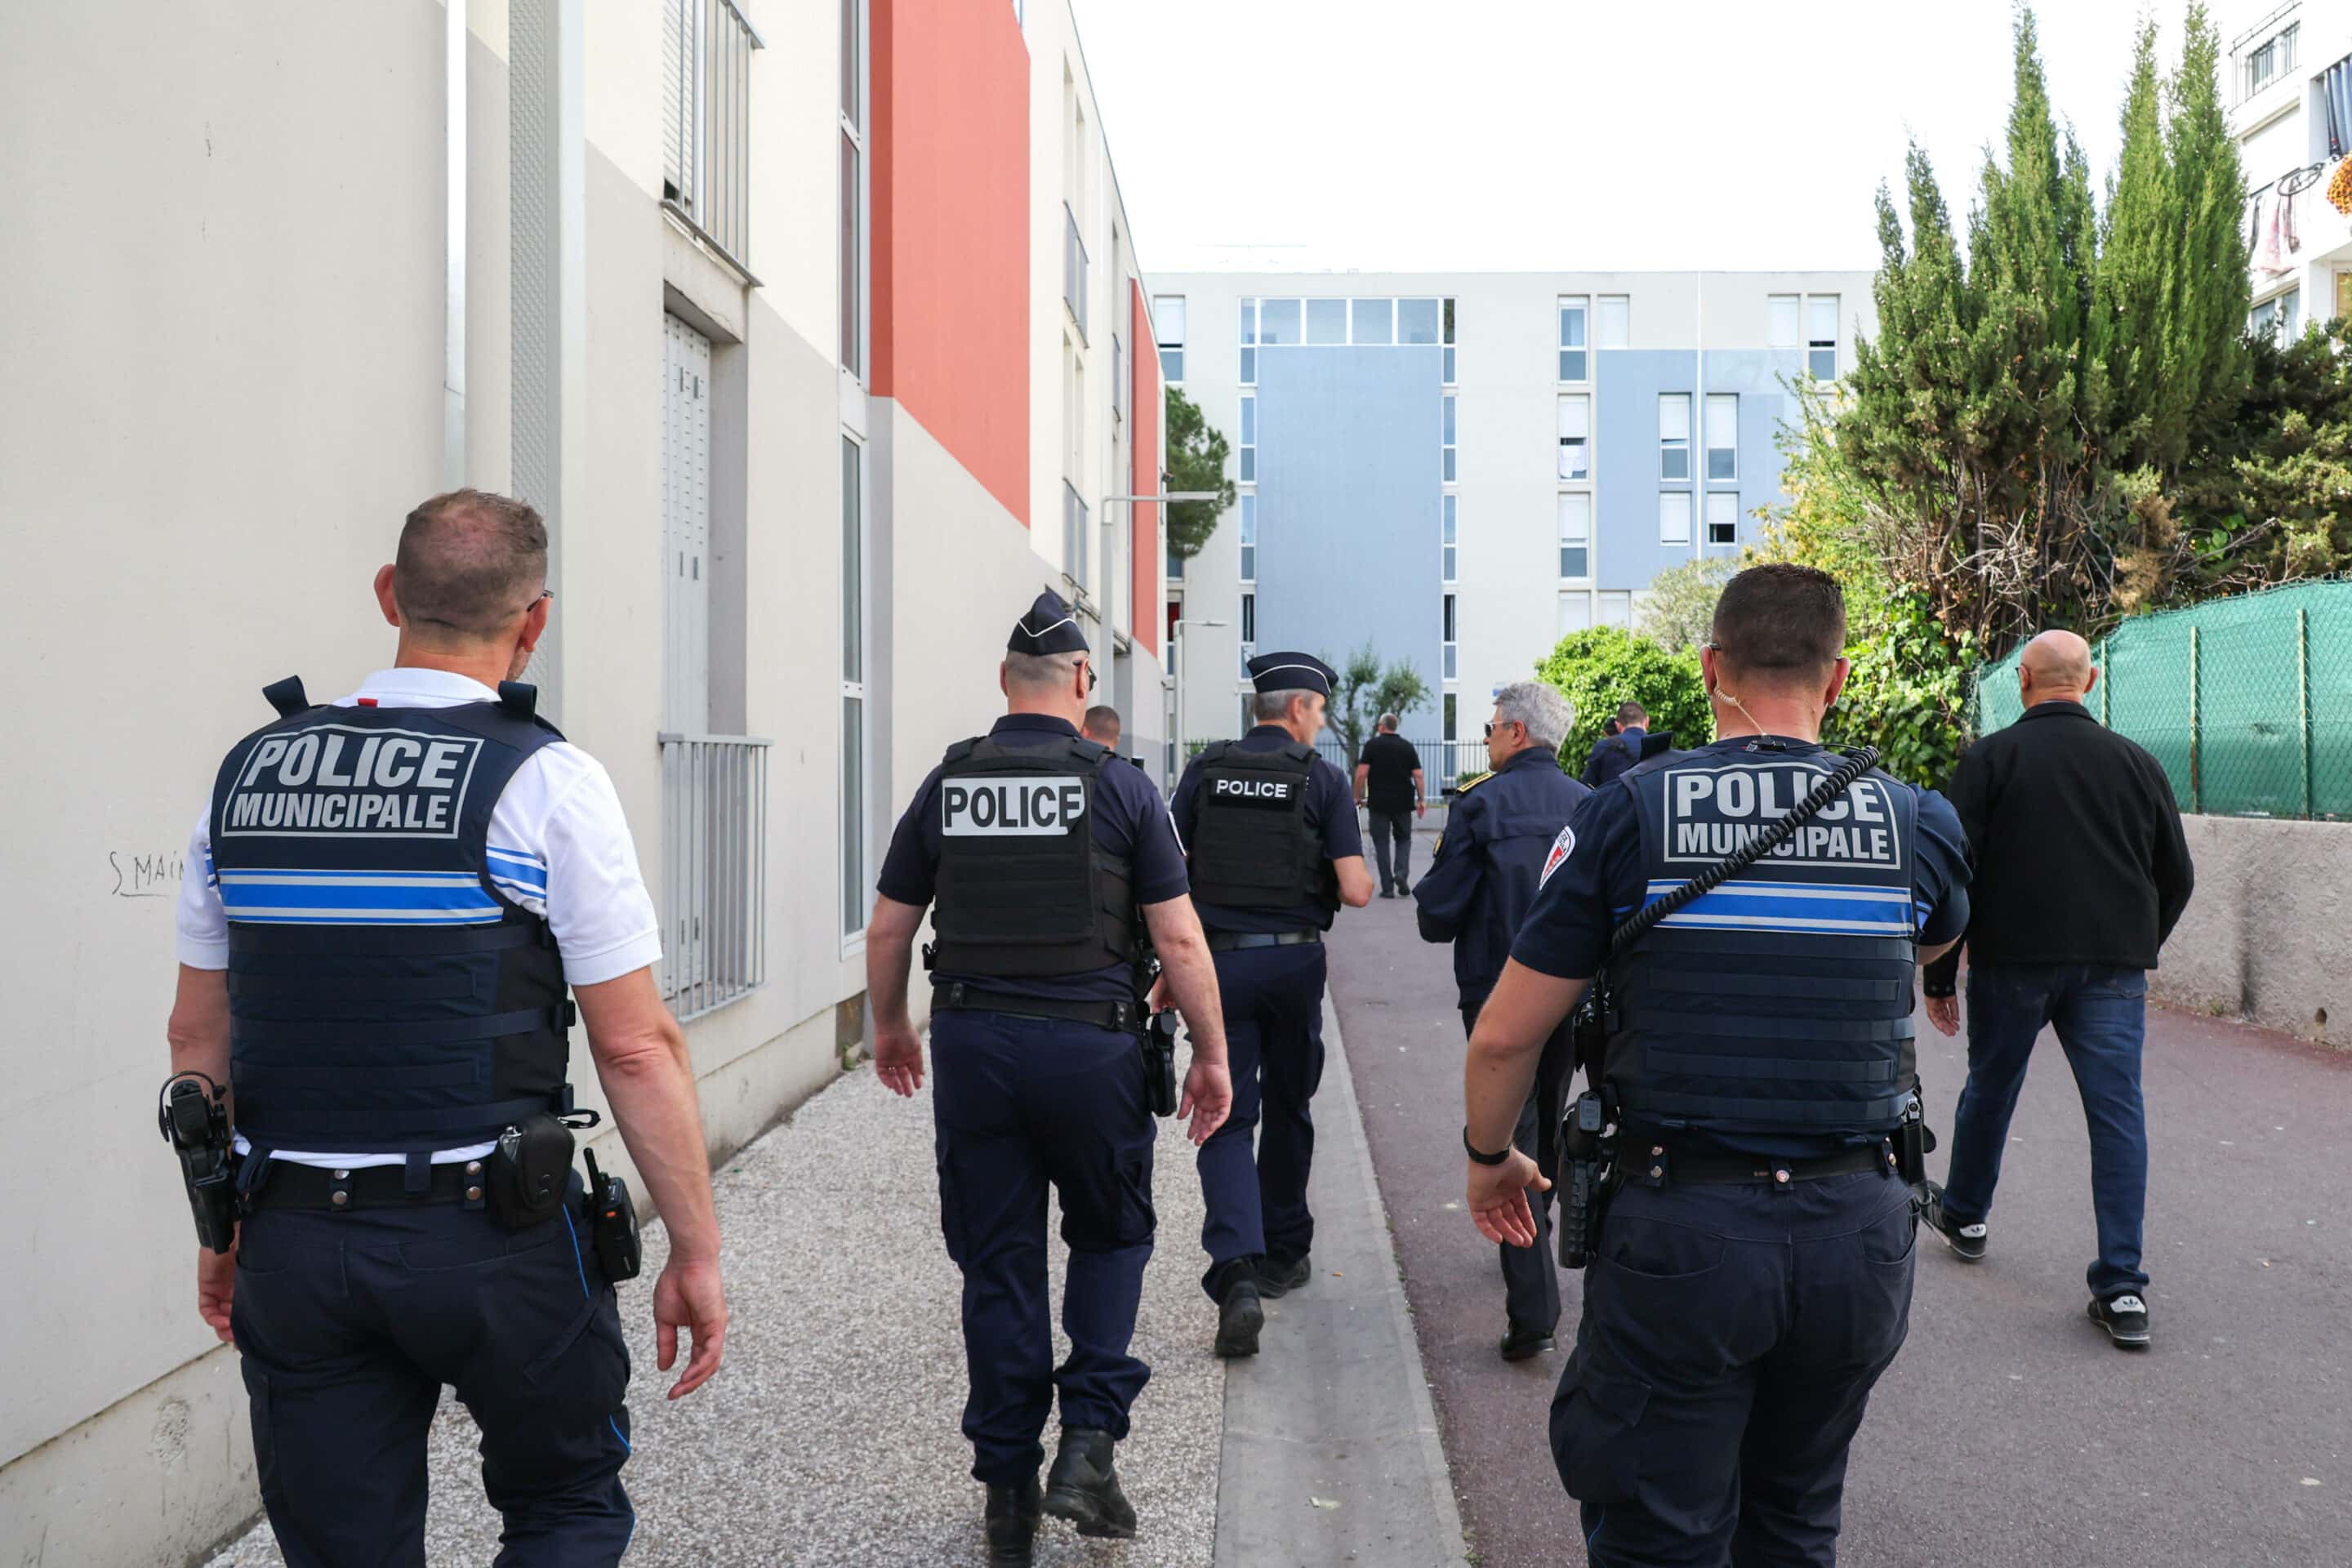 Police dispositif renforce suite a une fusillade avec une dizaine de coups de feu tires dans le quartier "Les Moulins", Nice FRANCE - 05/05/2023//SYSPEO_sysA030/Credit:SYSPEO/SIPA/2305062239